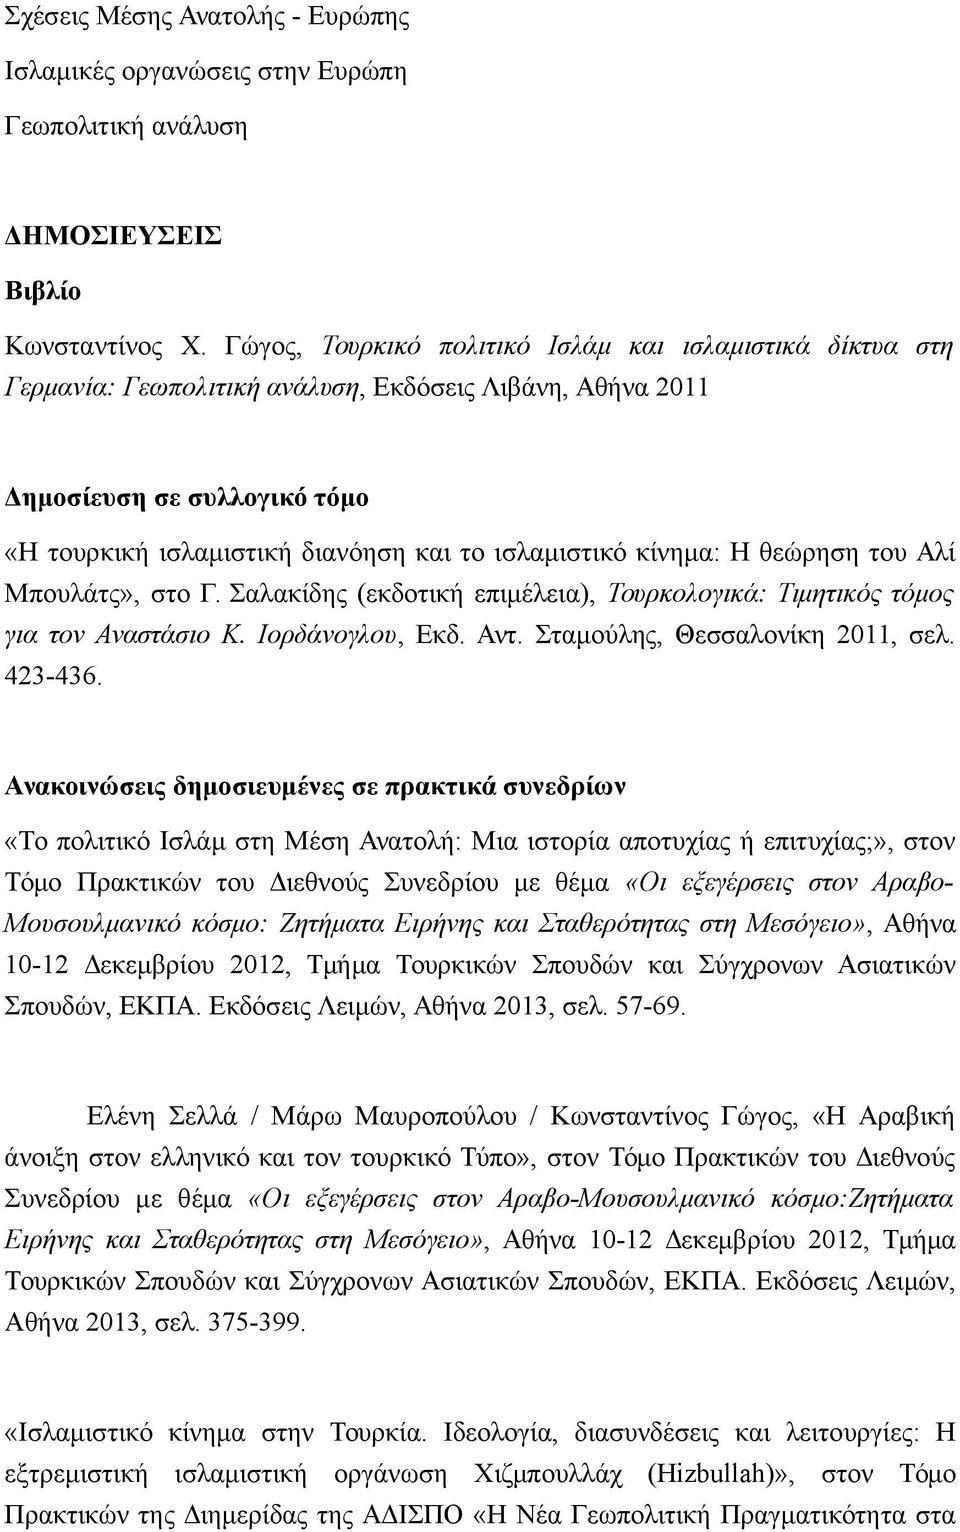 κίνημα: Η θεώρηση του Αλί Μπουλάτς», στο Γ. Σαλακίδης (εκδοτική επιμέλεια), Τουρκολογικά: Τιμητικός τόμος για τον Αναστάσιο Κ. Ιορδάνογλου, Εκδ. Αντ. Σταμούλης, Θεσσαλονίκη 2011, σελ. 423-436.